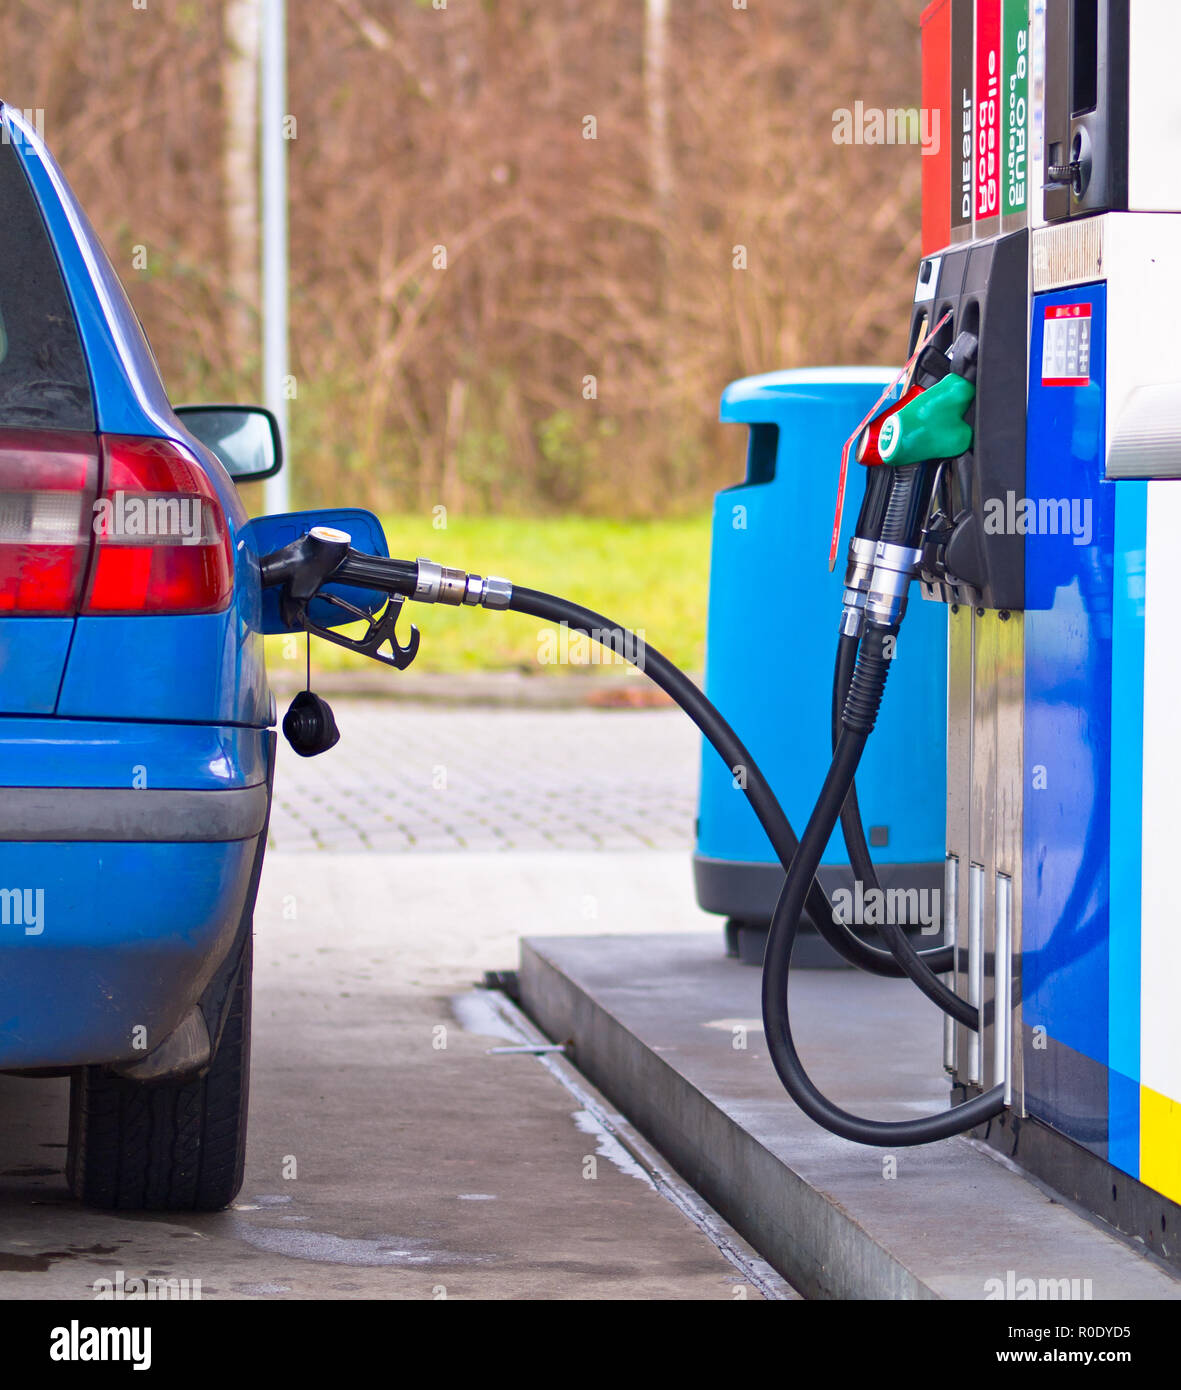 Coche azul en la estación de gasolina está lleno de combustible contra precios inflados Foto de stock